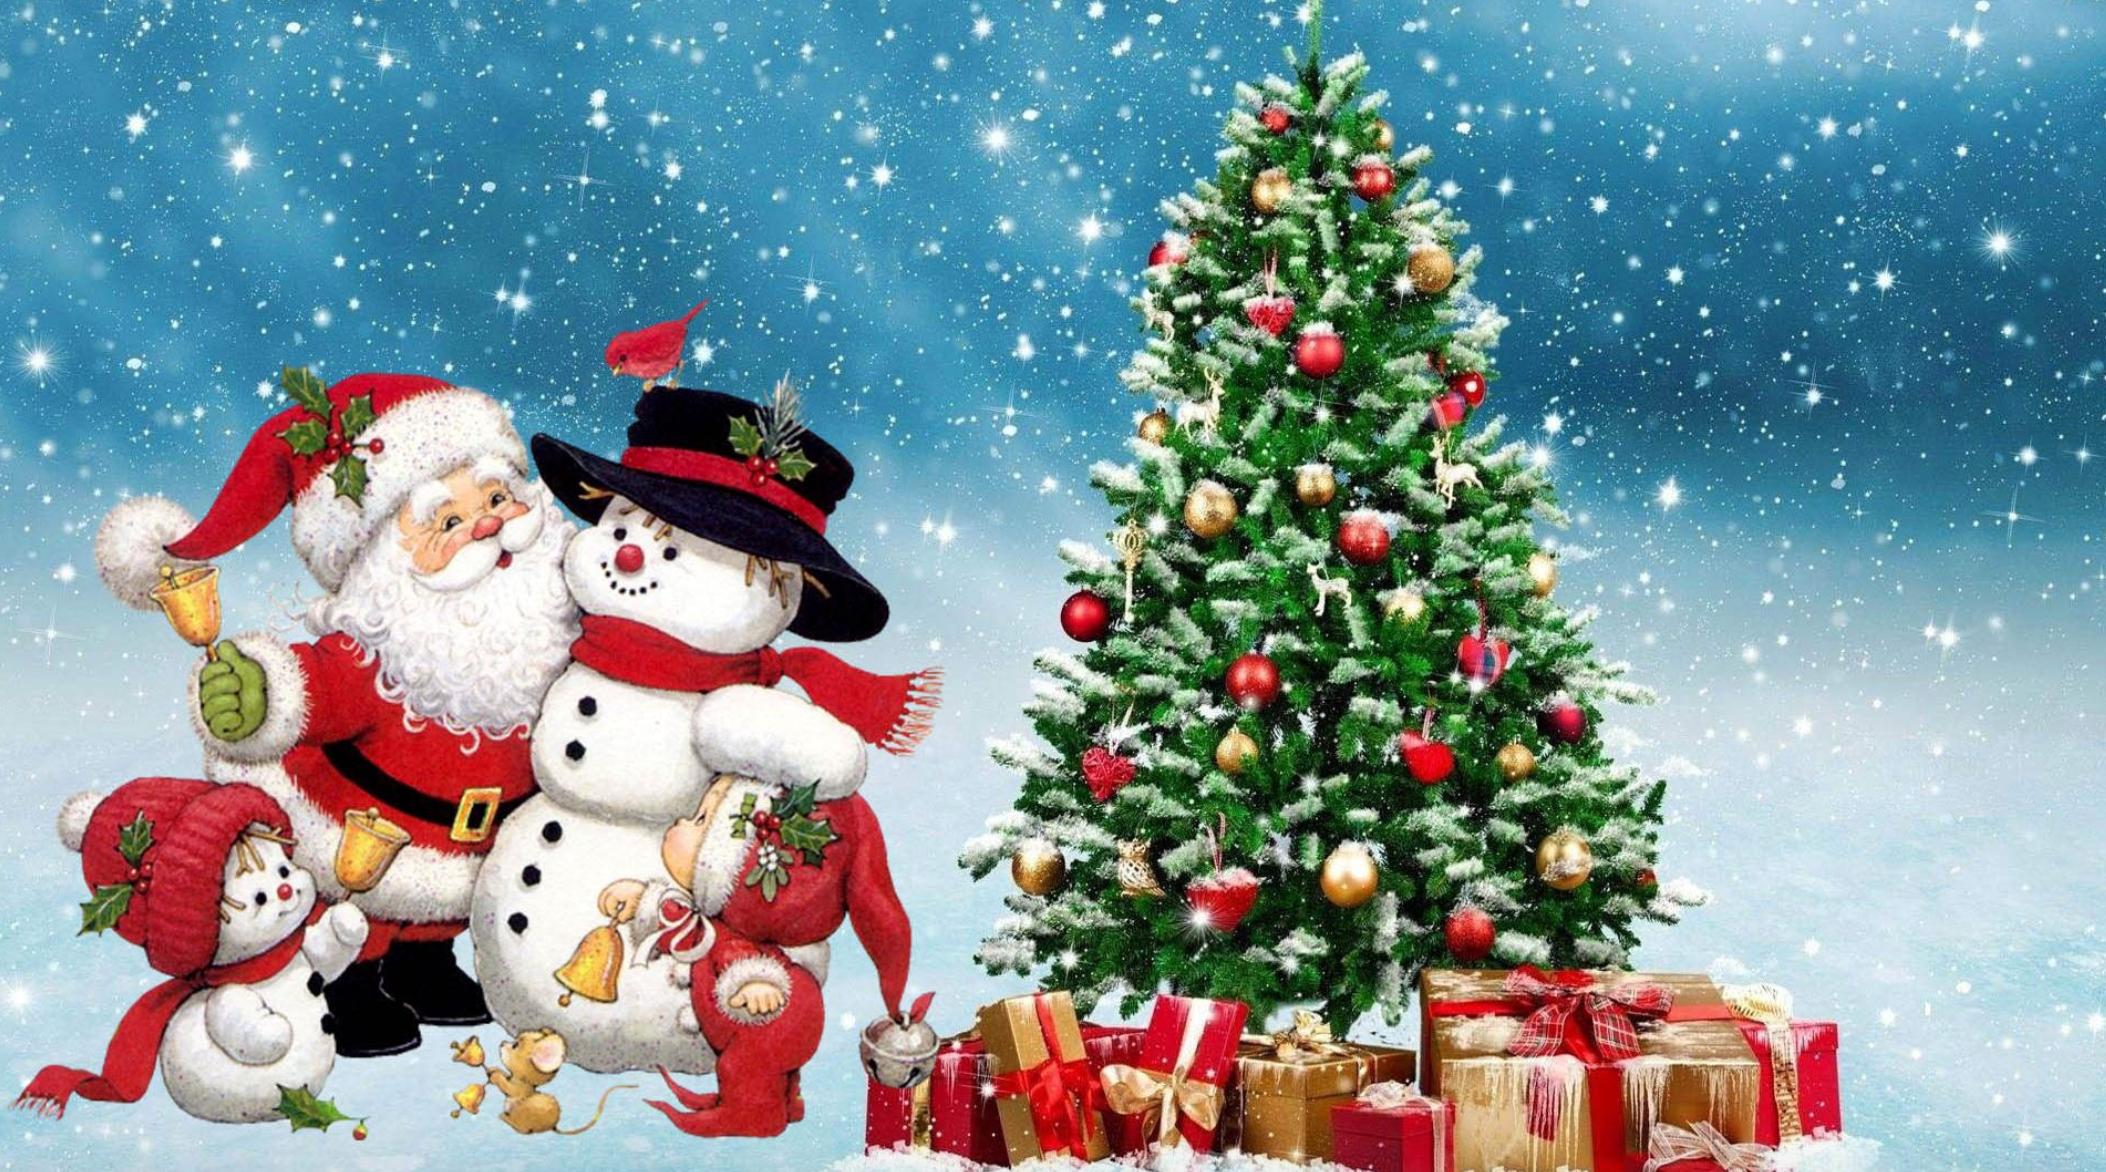 Buon Natale In Allegria Mp3.Top 15 Suonerie Di Natale 2020 Suonerietelefono Com By Suonerie Telefono Medium